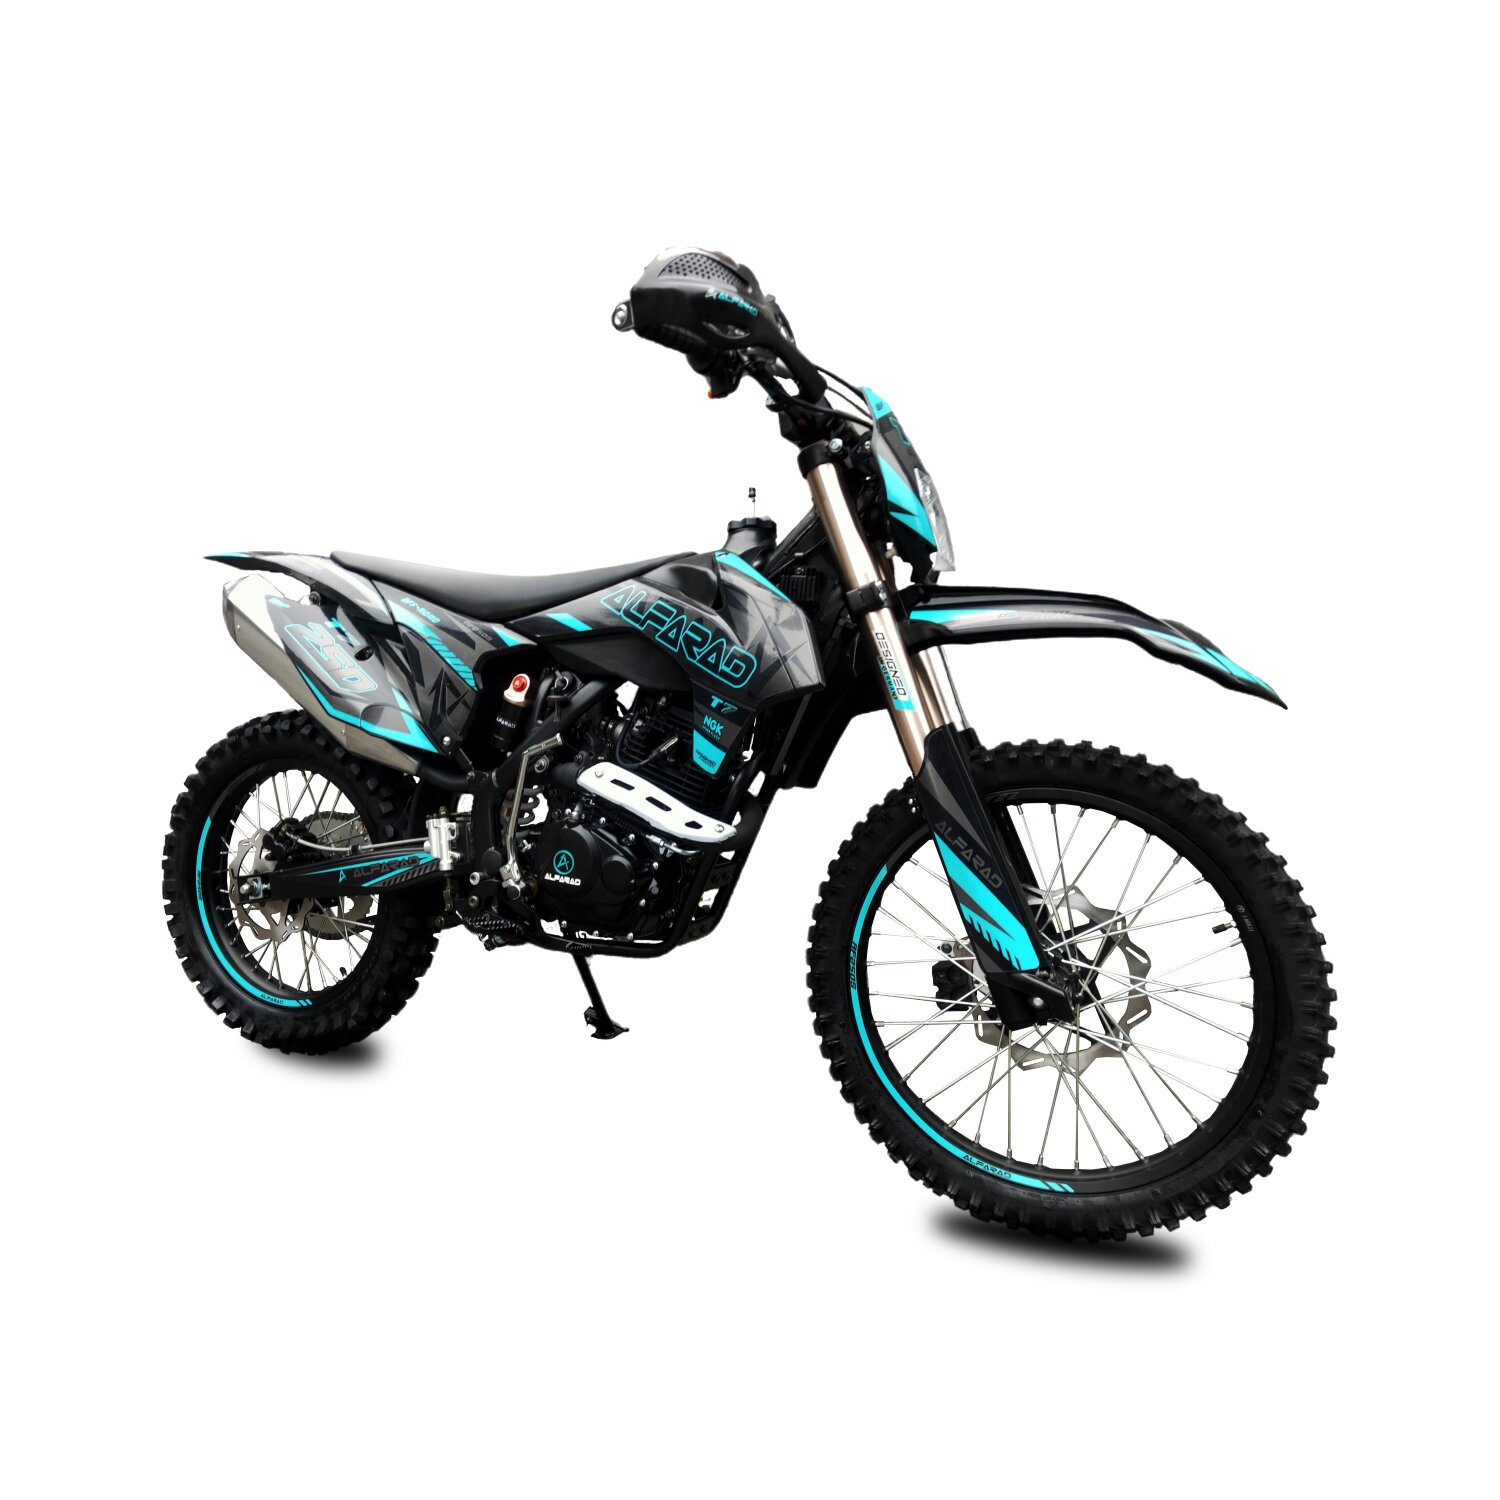 Finden Sie Hohe Qualität 250cc Dirt Bike Engine Hersteller und